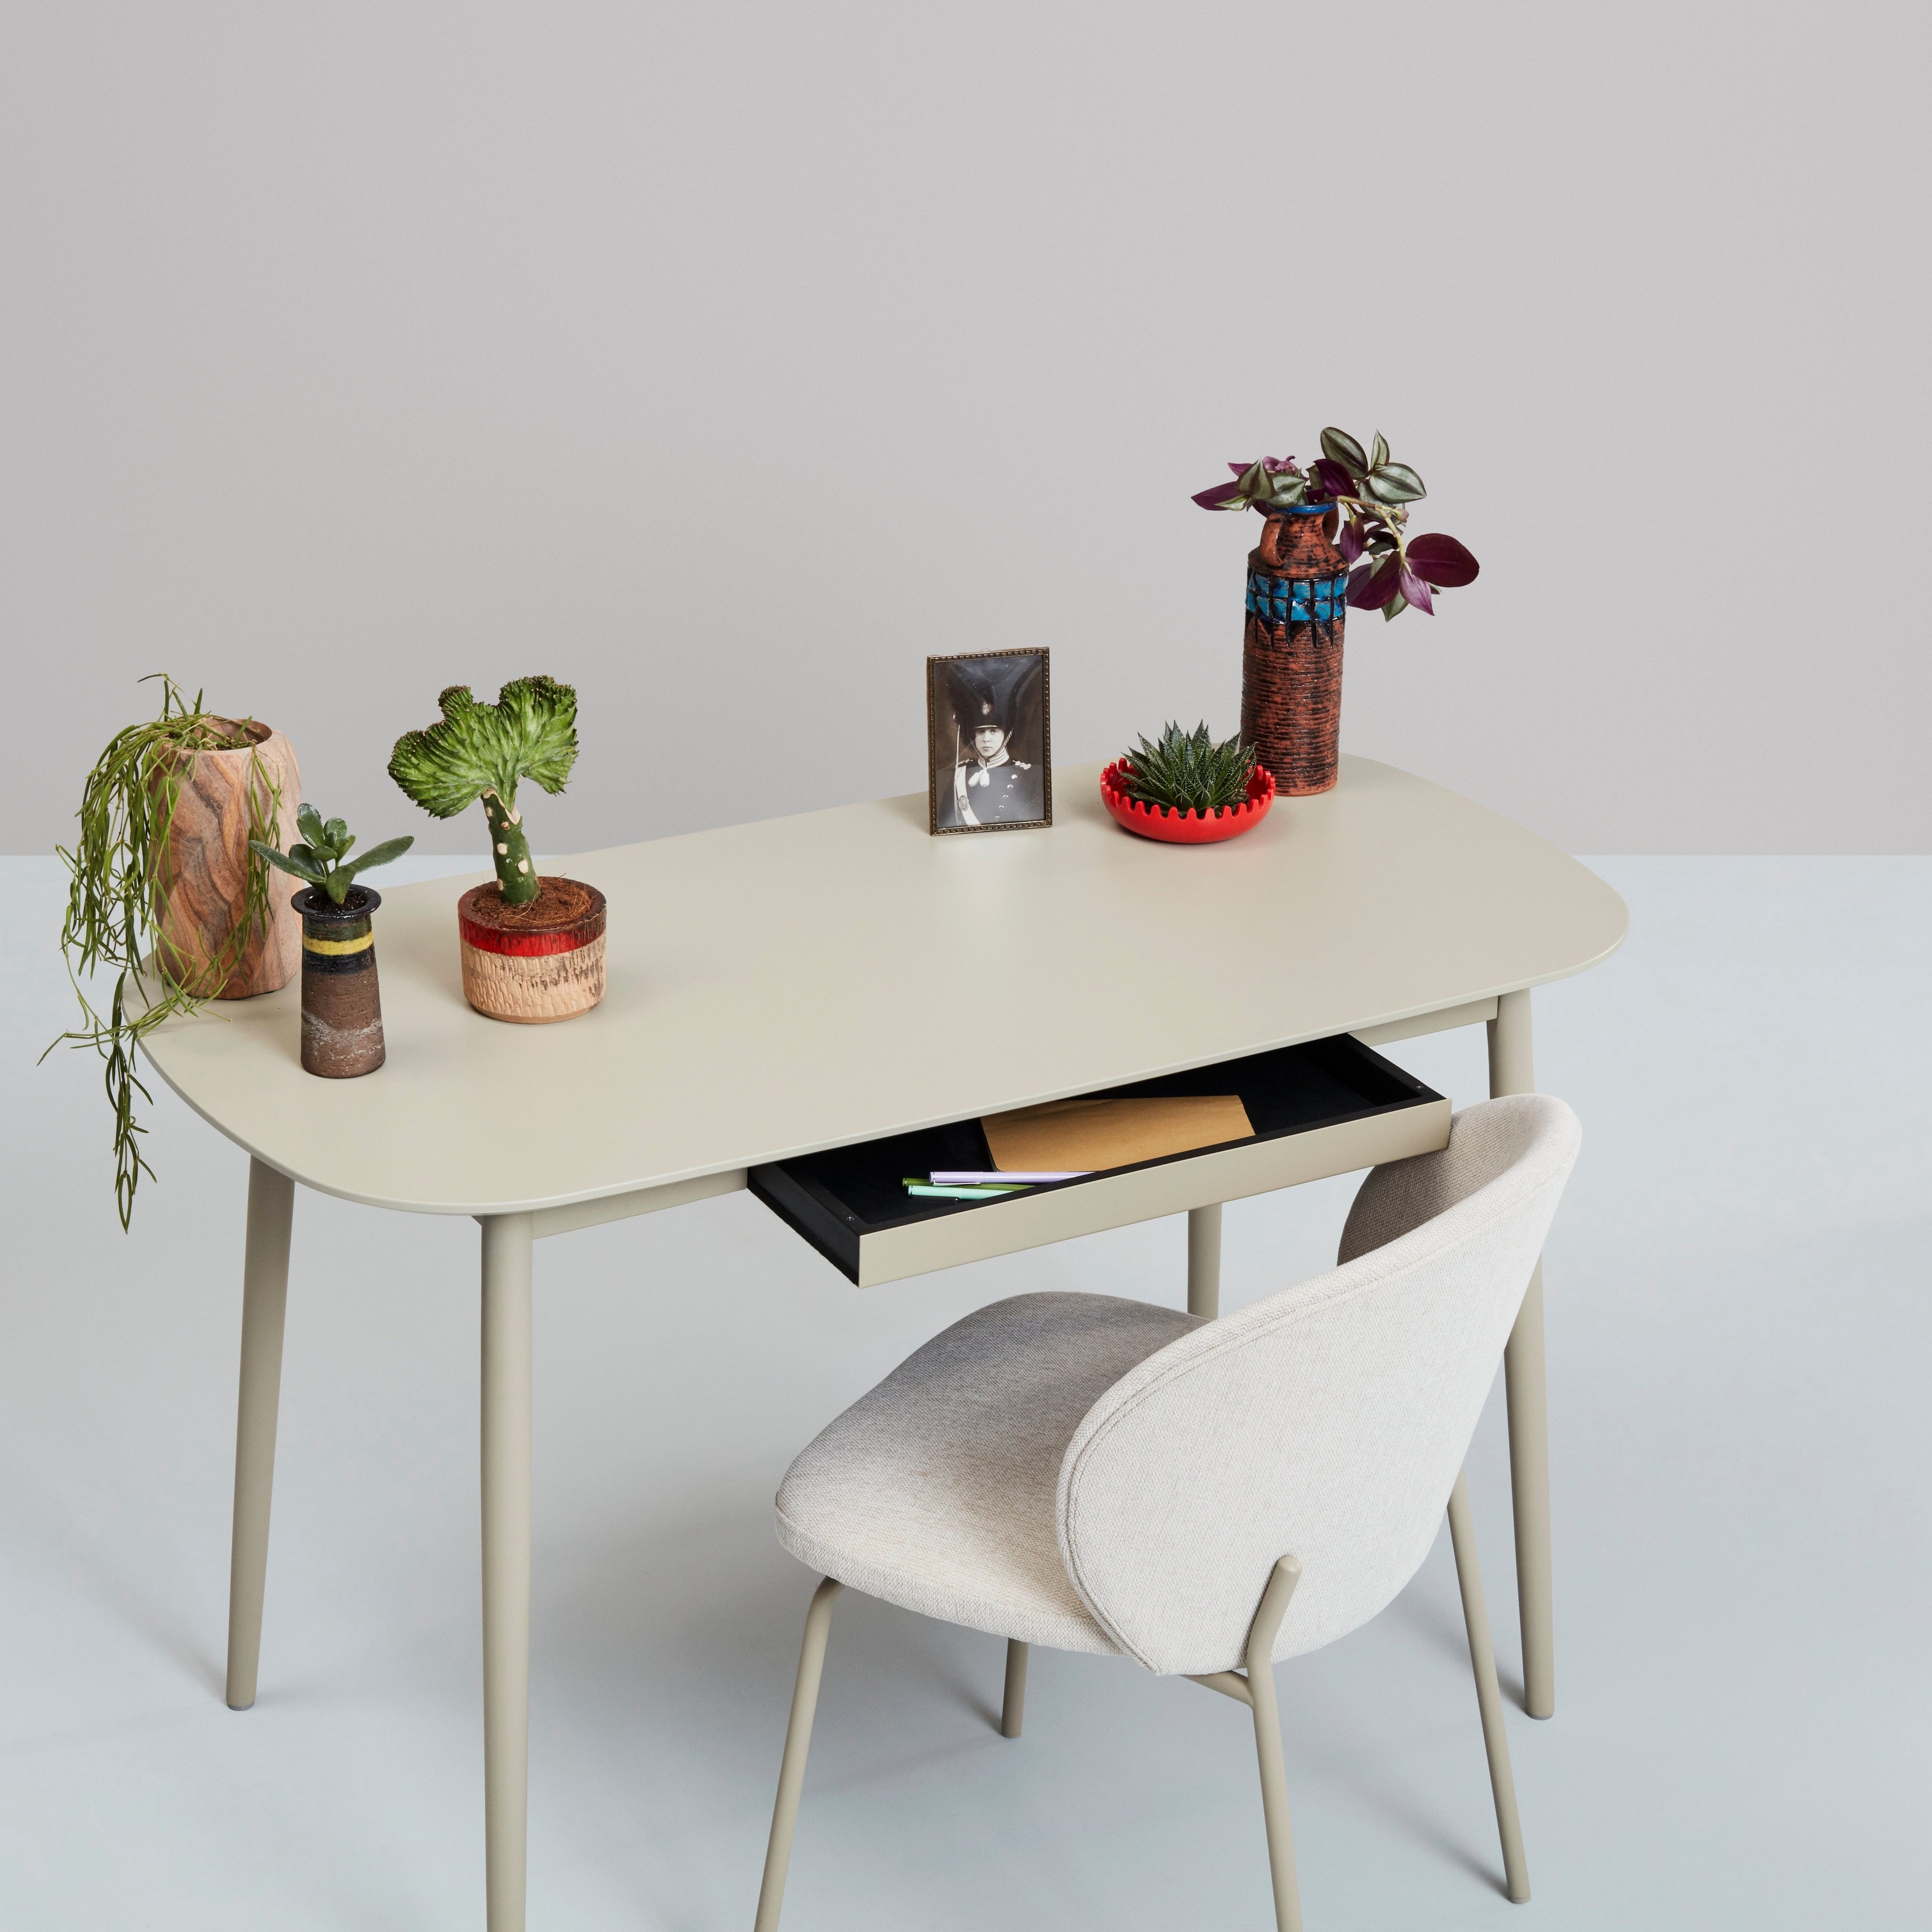 Białe biurko z roślinami, elementami dekoracyjnymi oraz krzesło na neutralnym tle.